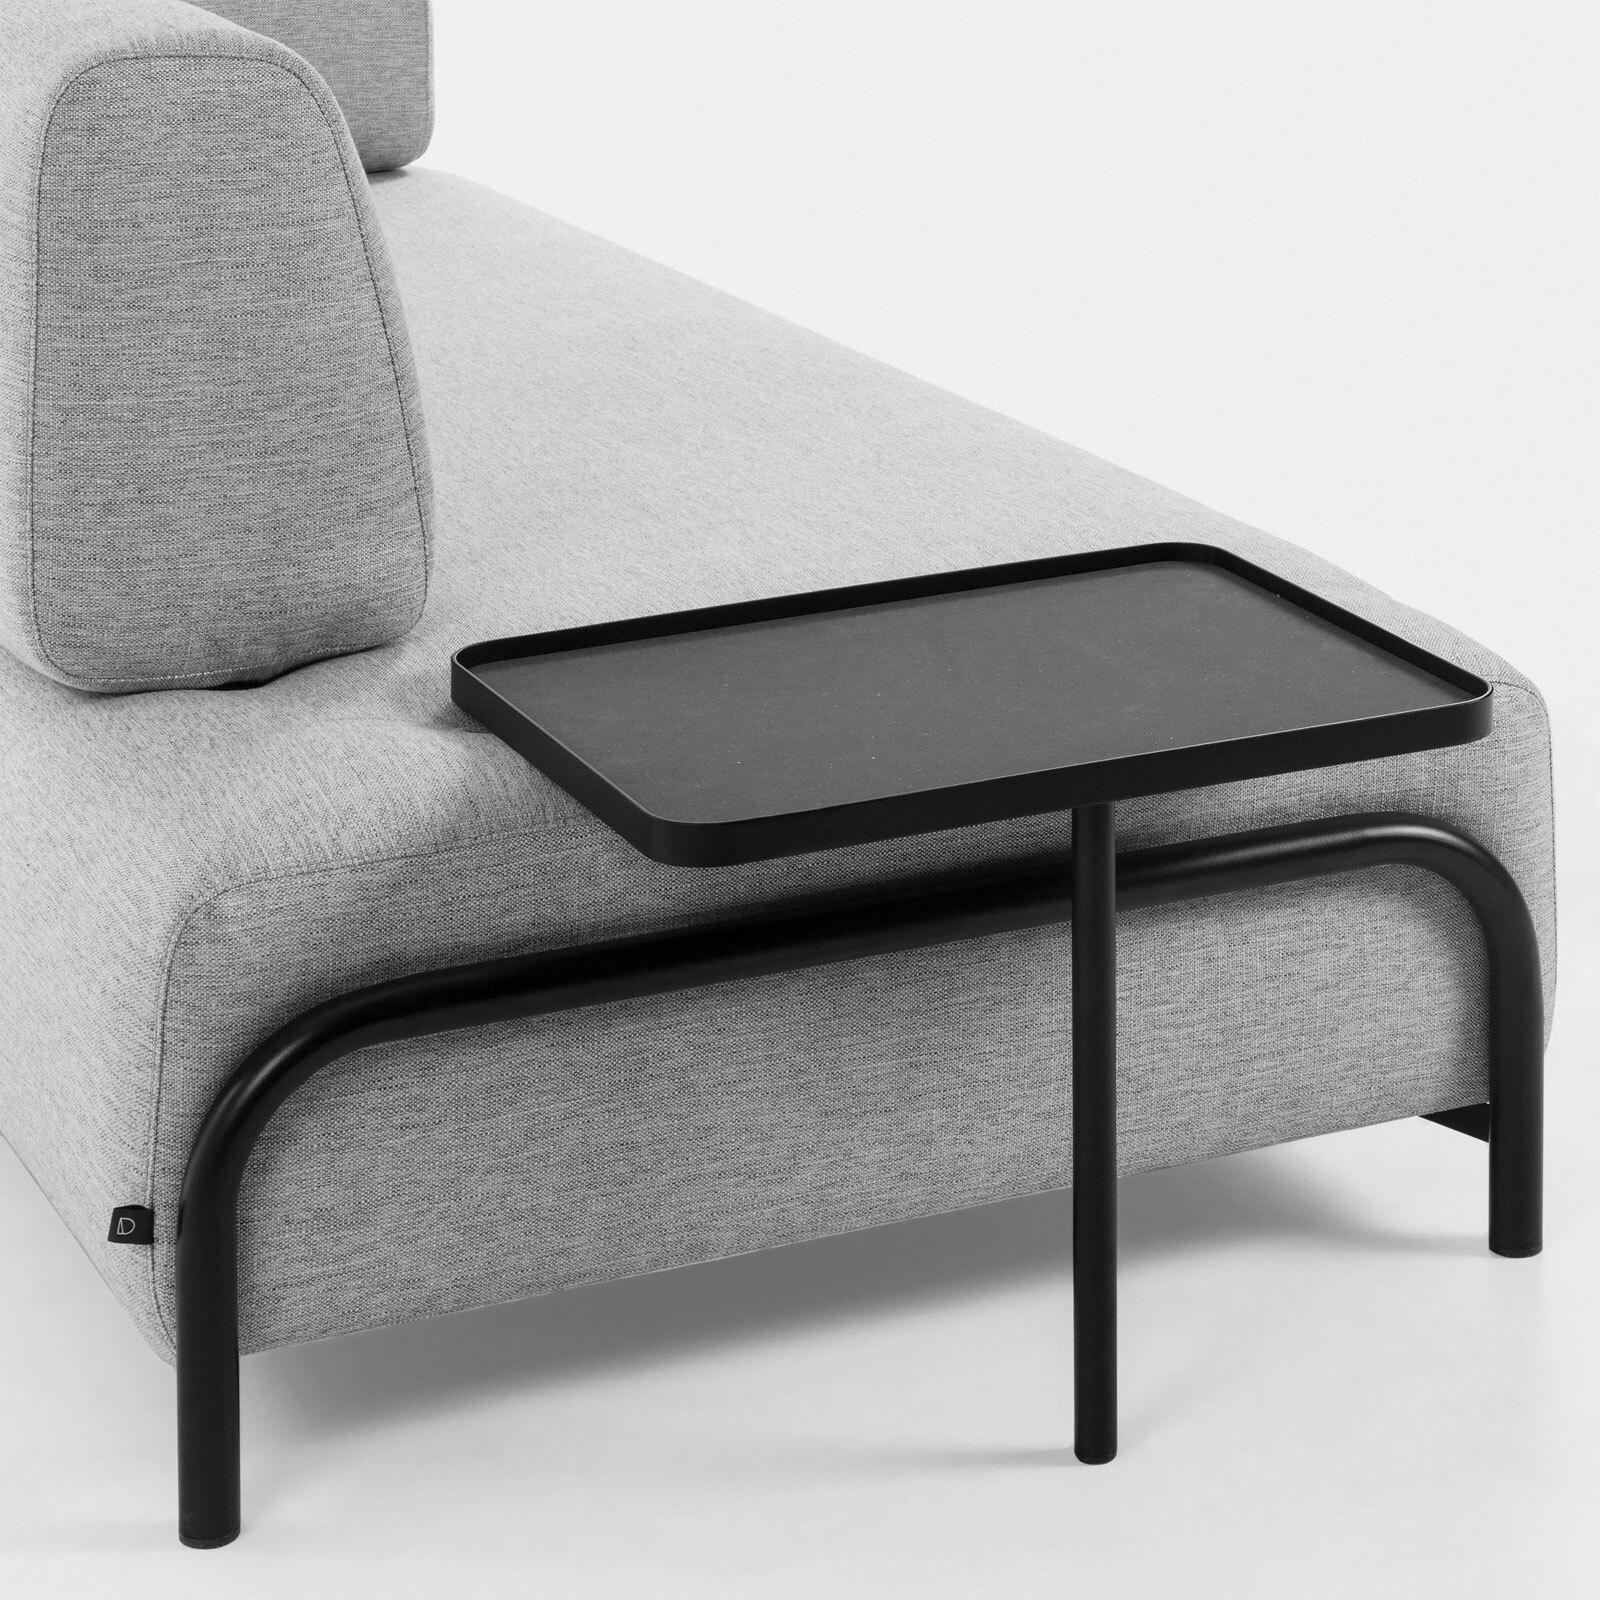 Kave Home Sofa 3-Sitzer COMPO hellgrau